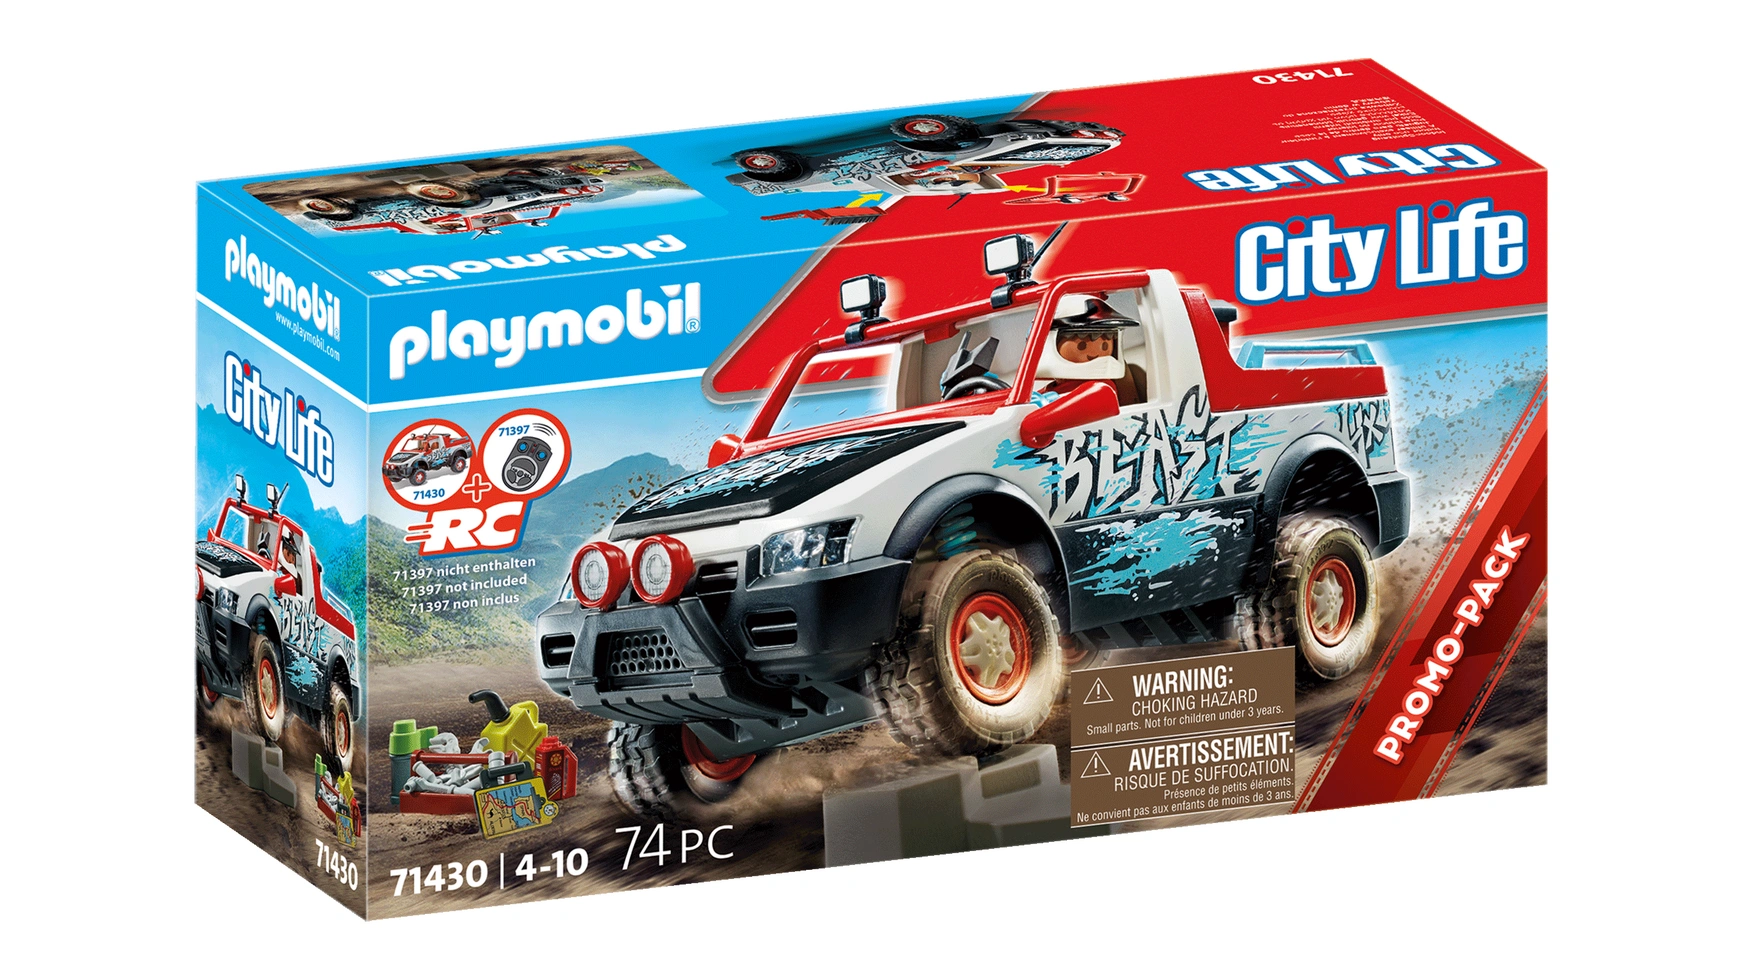 аттракцион playmobil сбей банки Городская жизнь раллийный автомобиль Playmobil